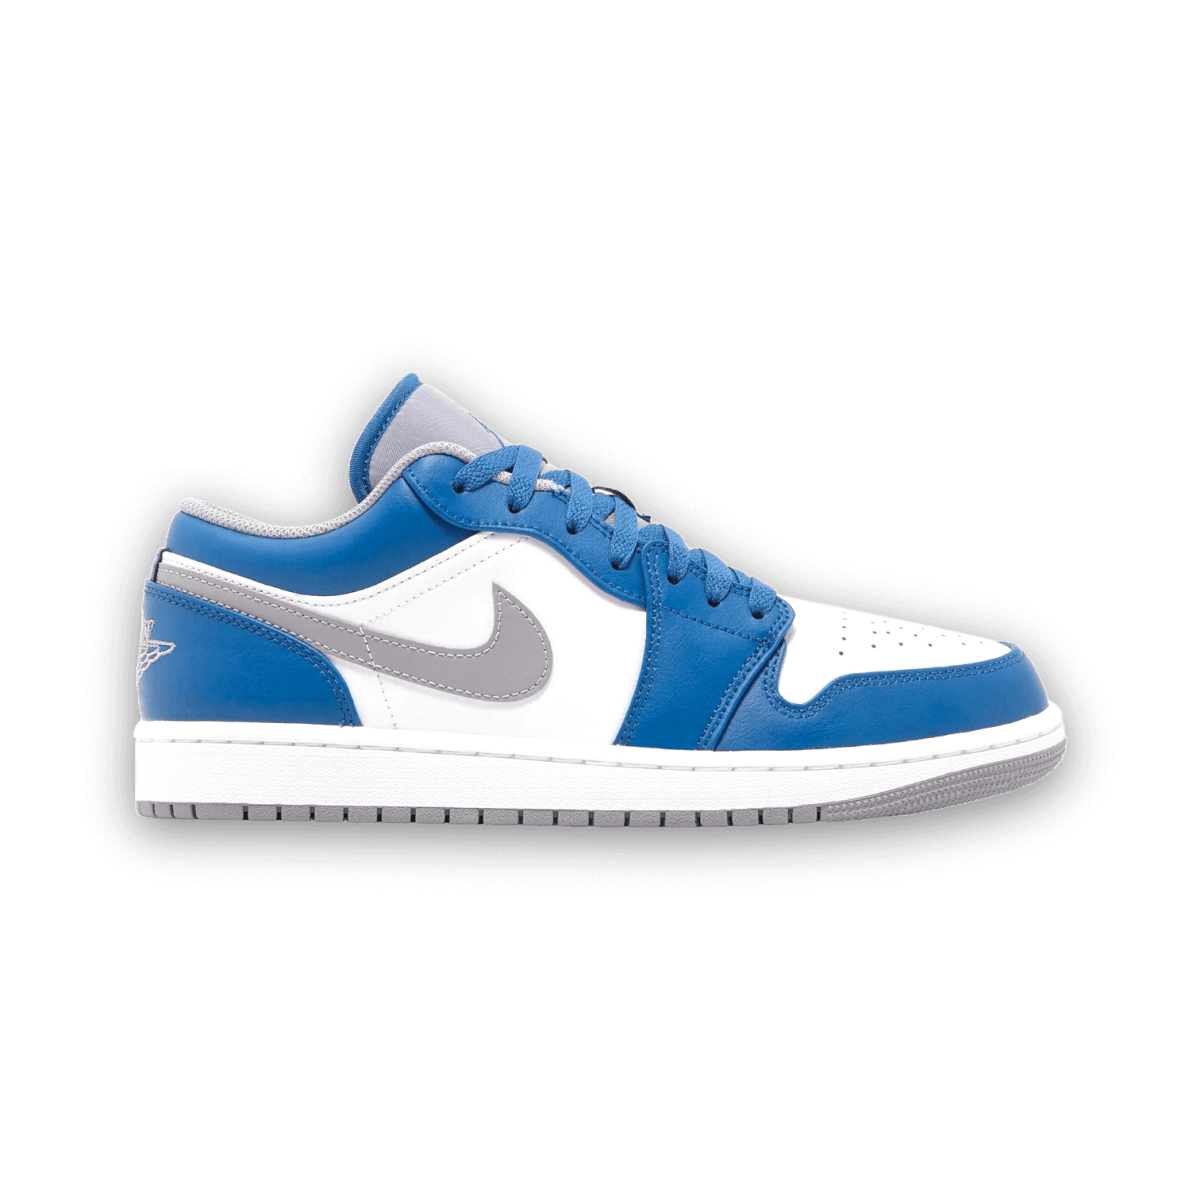 Air Jordan 1 Low 'True Blue Cement' - Low Sneaker - Jordan - Jawns on Fire